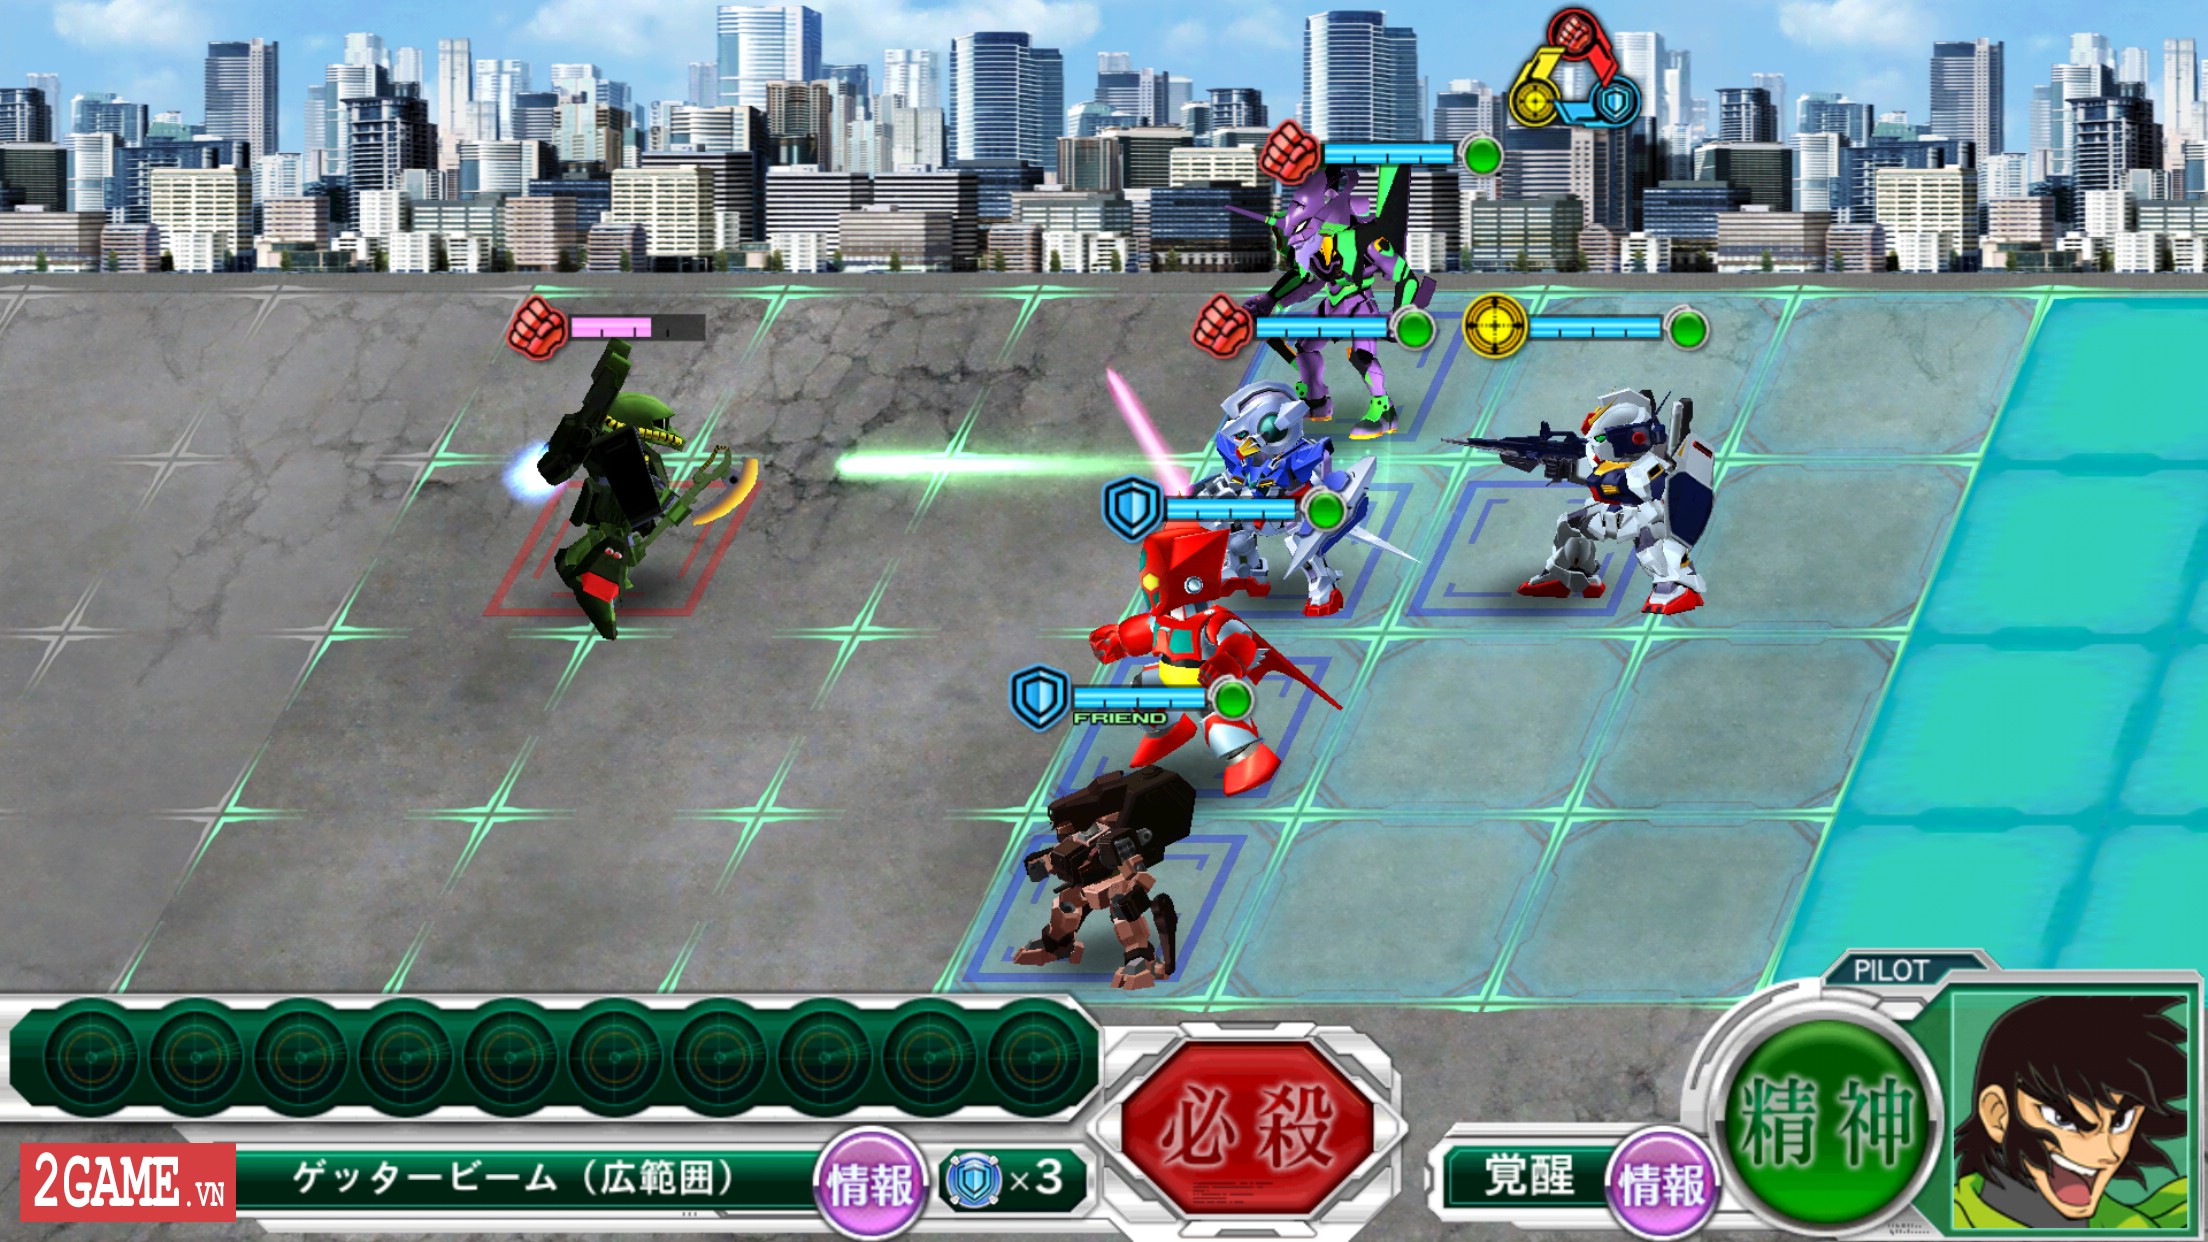 2game-Super-Robot-Wars-X-mobile-2.jpg (2208×1242)